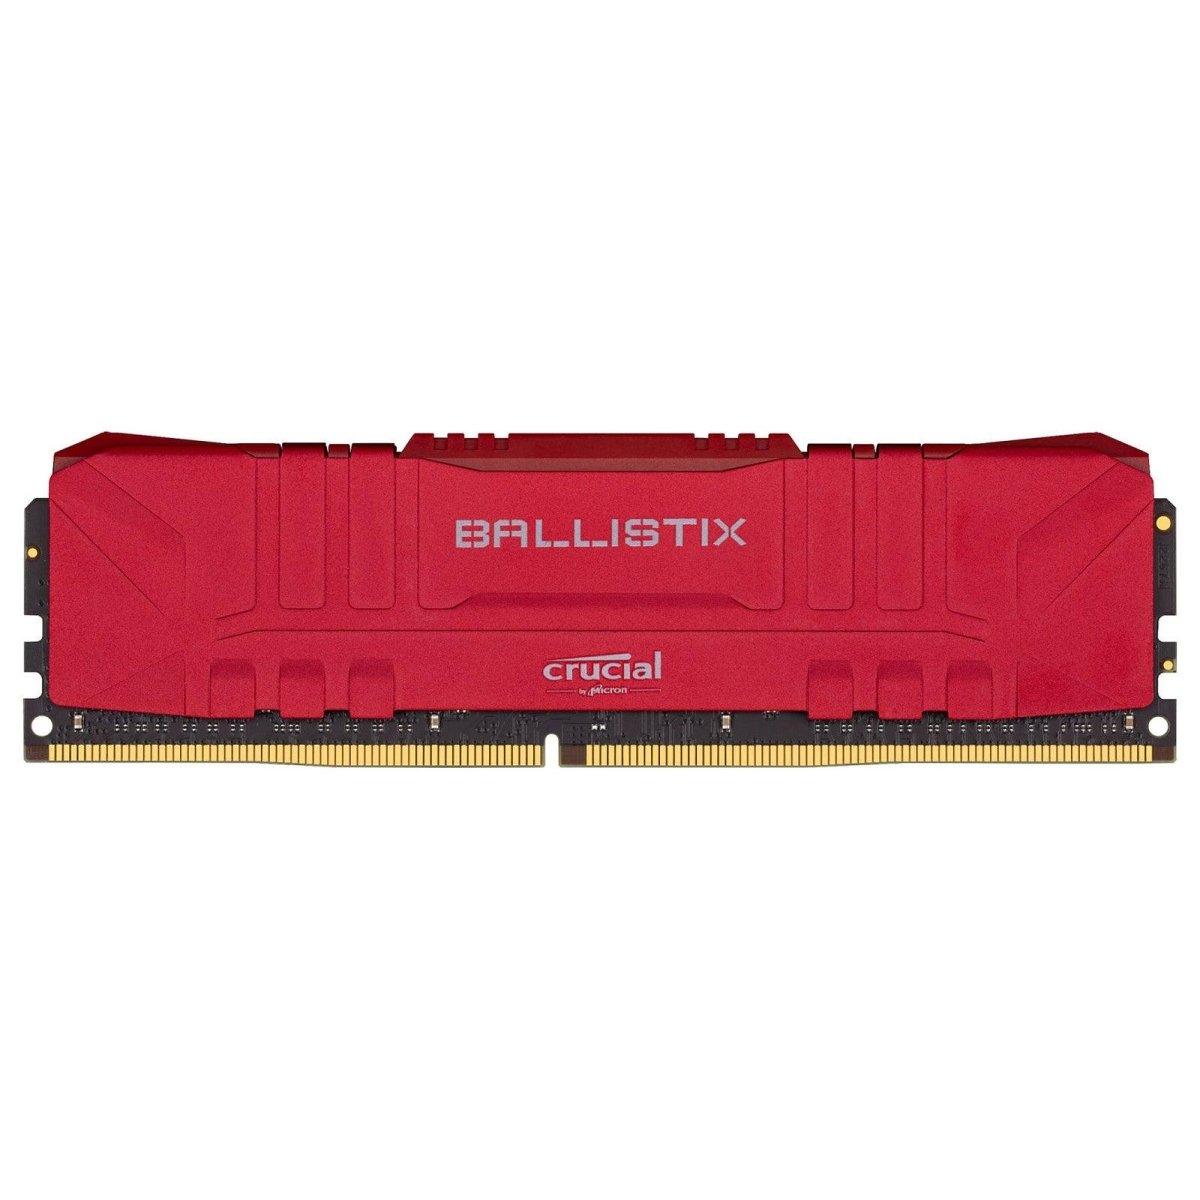 Crucial Ballistix 16 Go maroc (2 x 8 Go)  DDR4 3200 MHz CL16 Rouge maroc Prix ram Barrette Memoire pas cher - smartmarket.ma